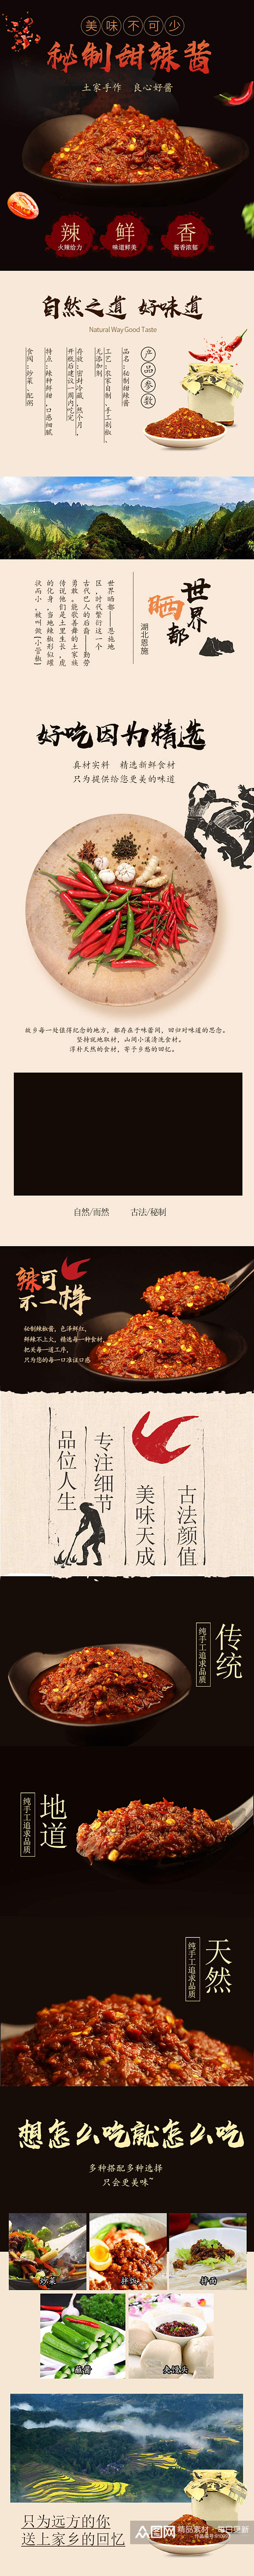 中国风火锅底料酱料详情页模板素材